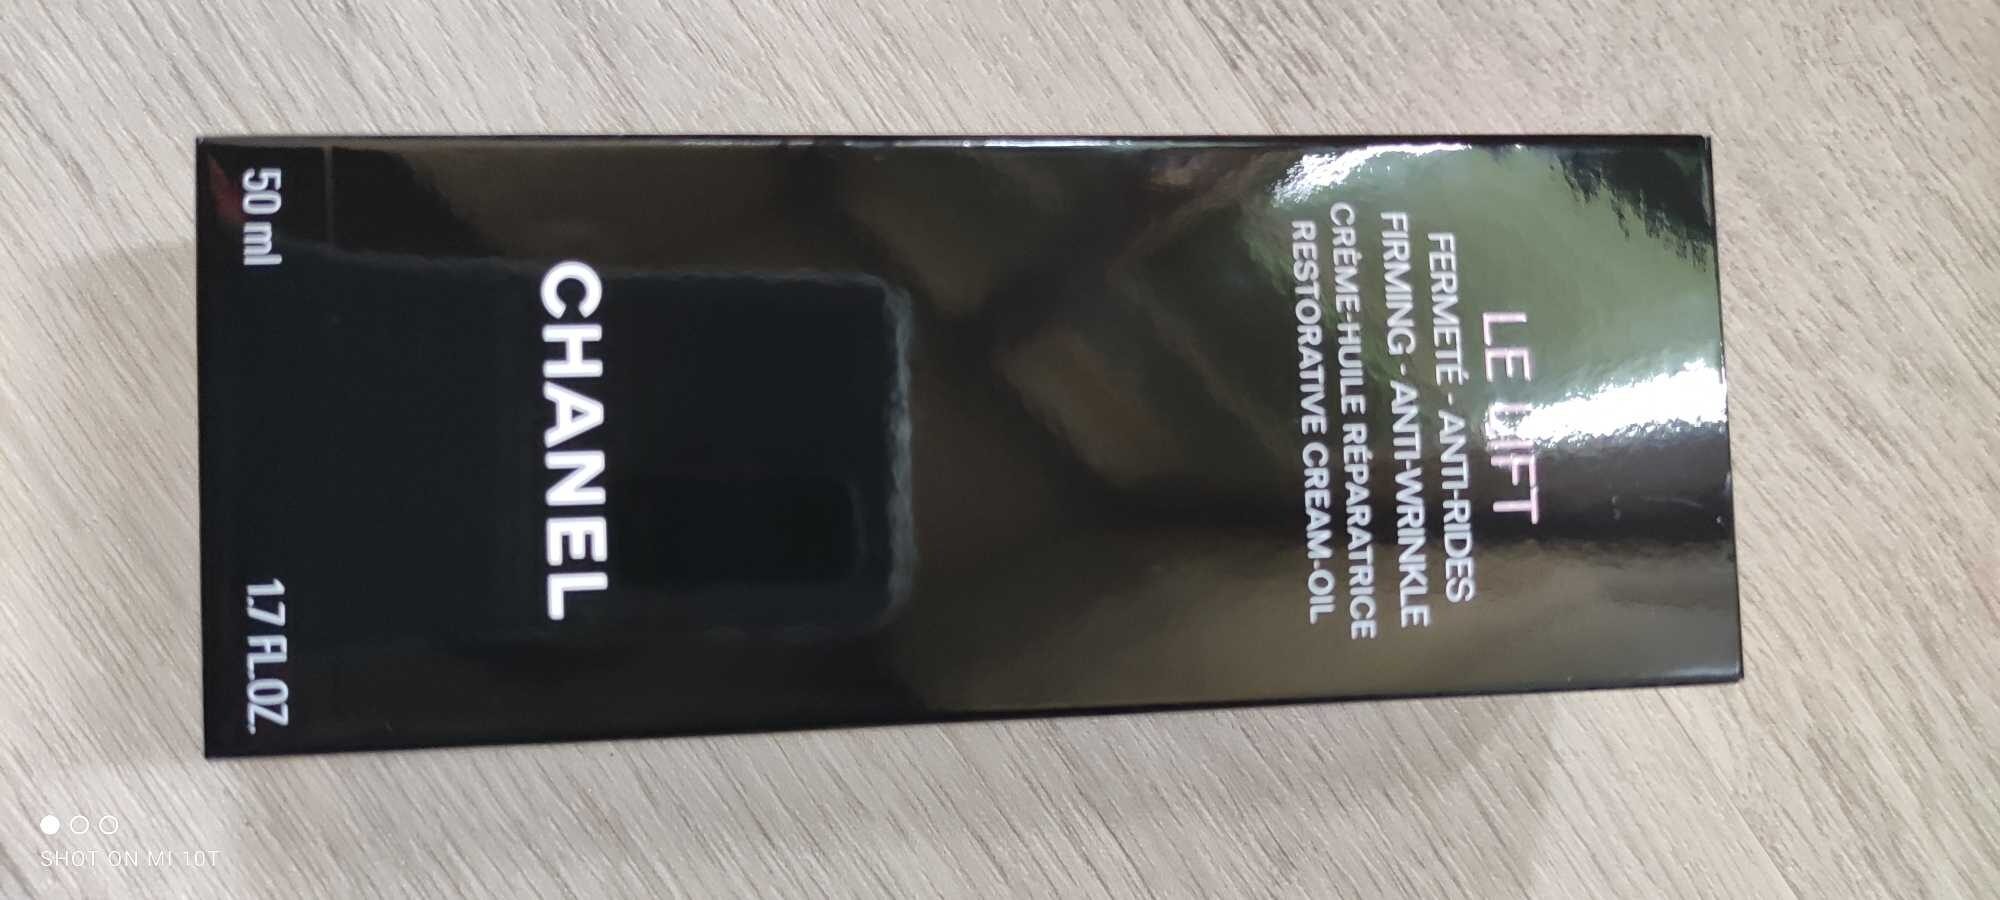 Le Lift crème huile réparatrice - Chanel